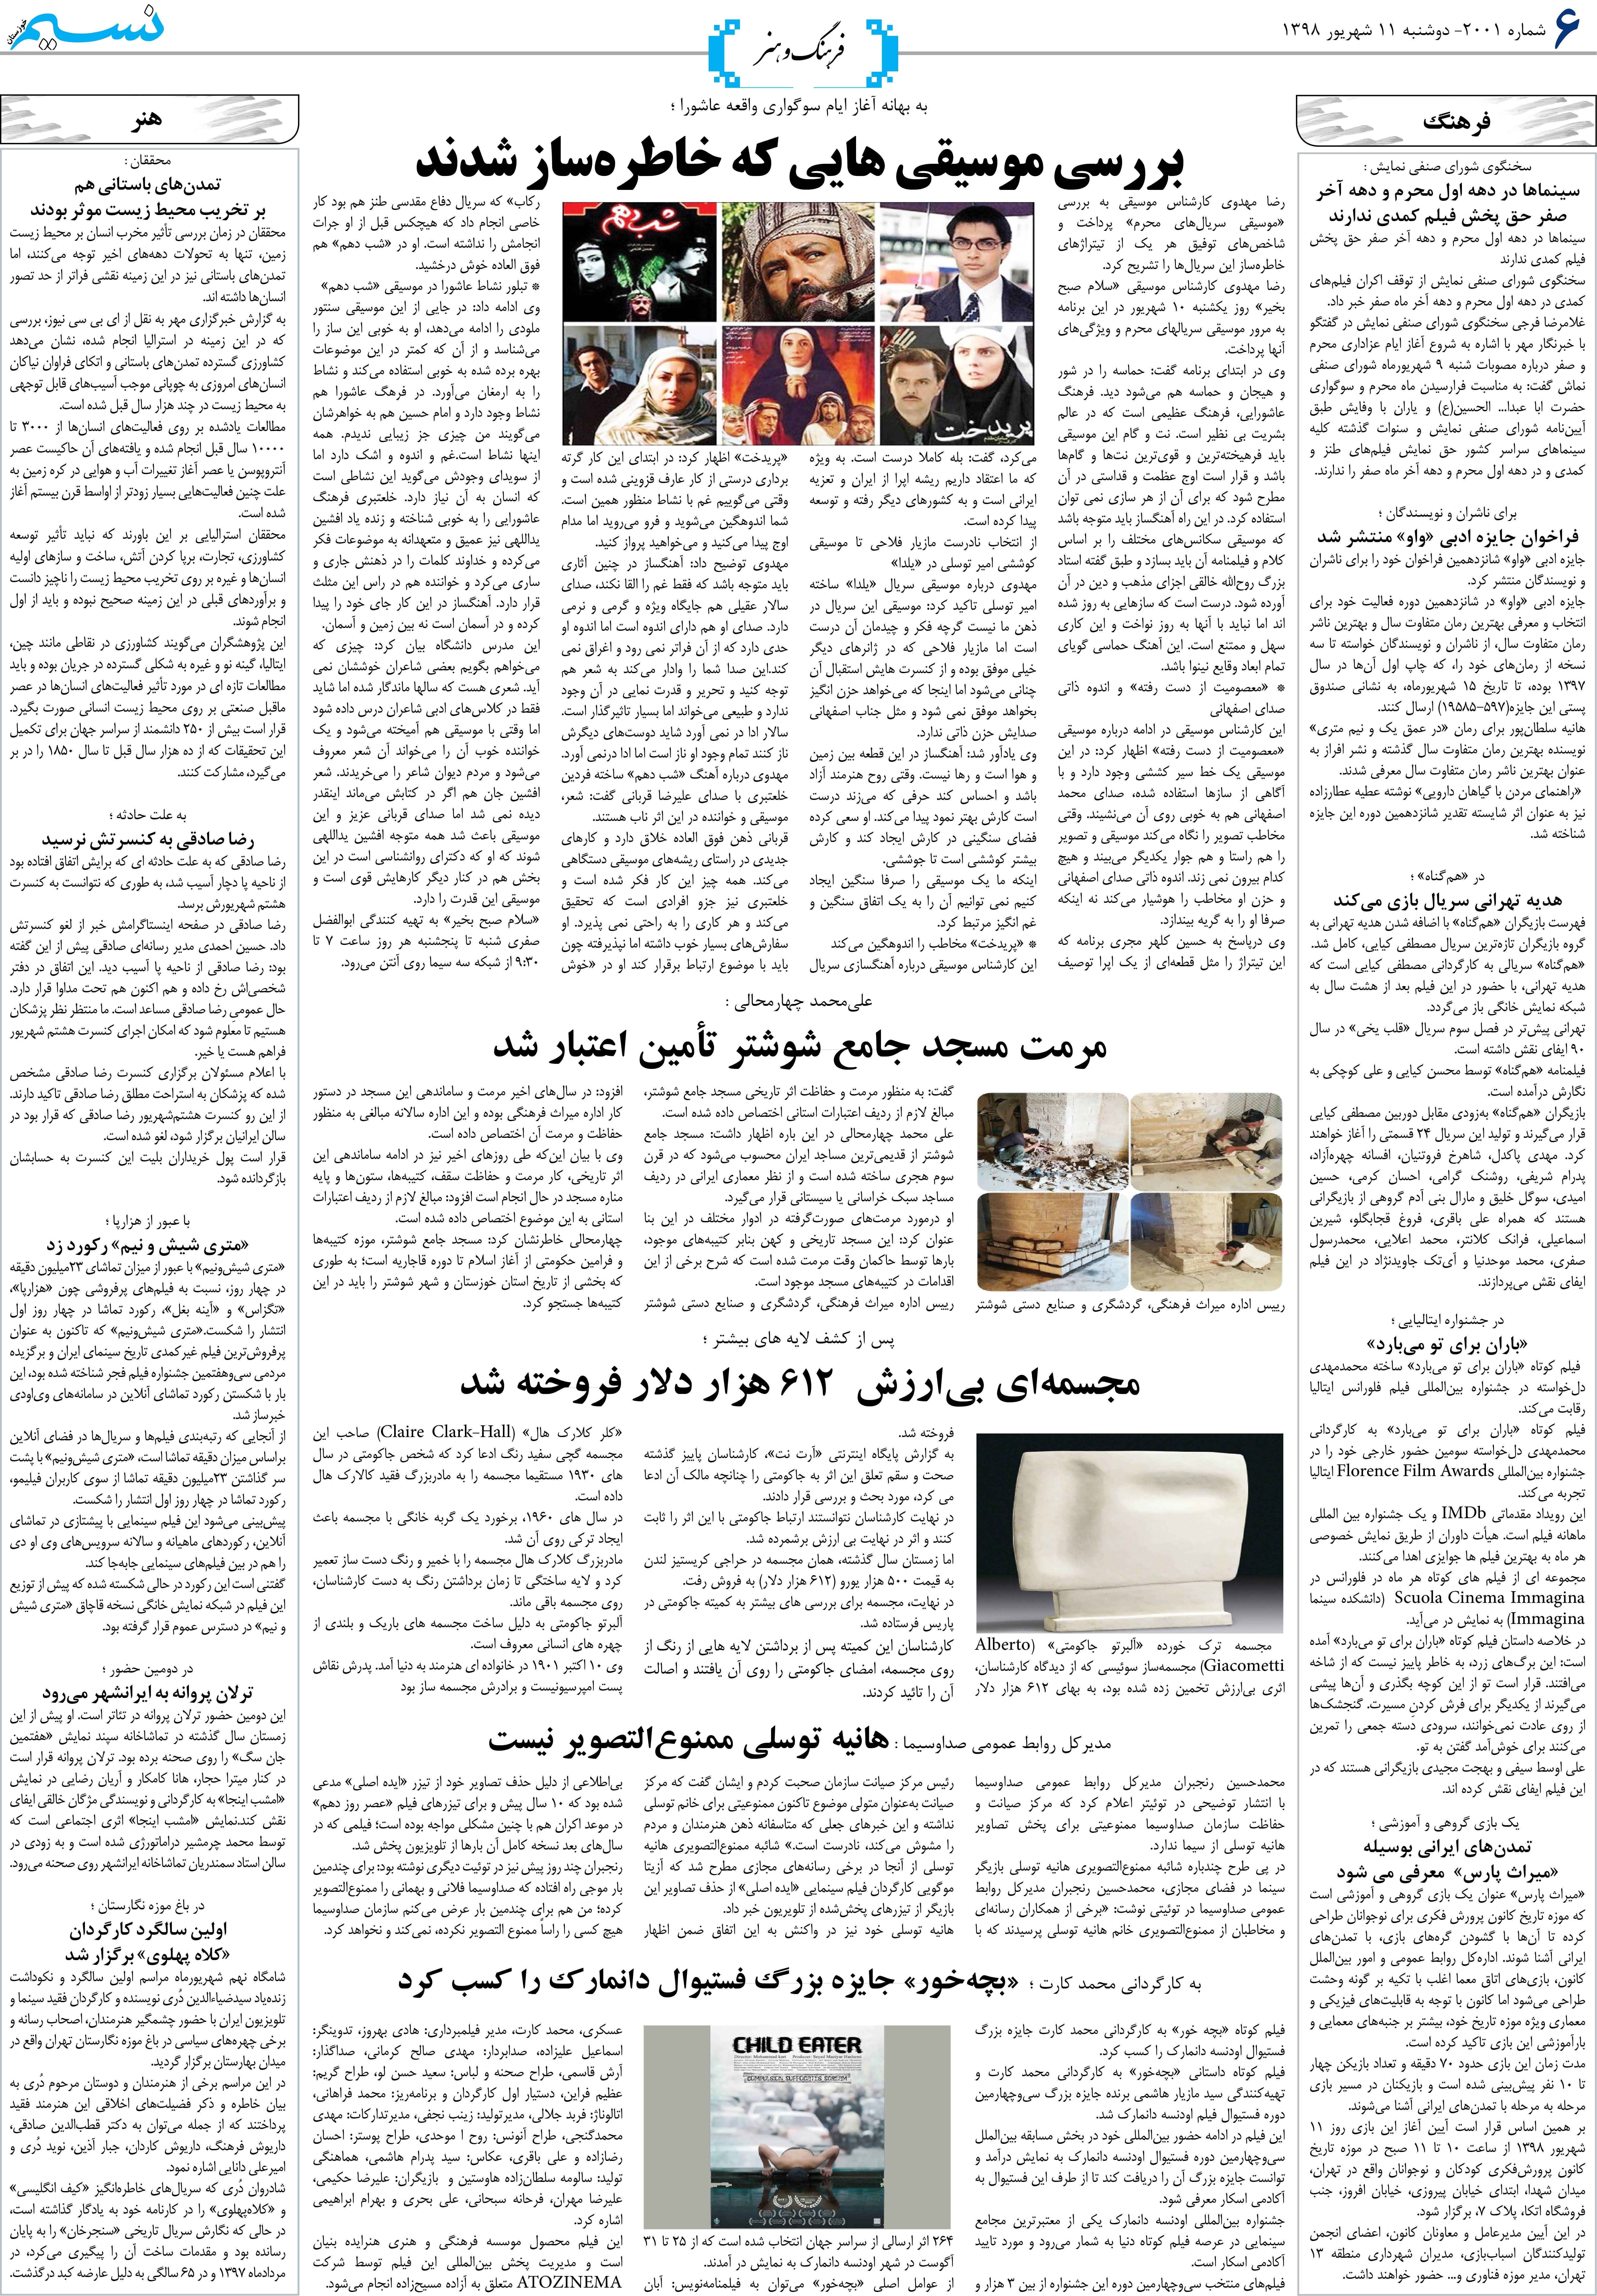 صفحه فرهنگ و هنر روزنامه نسیم شماره 2001